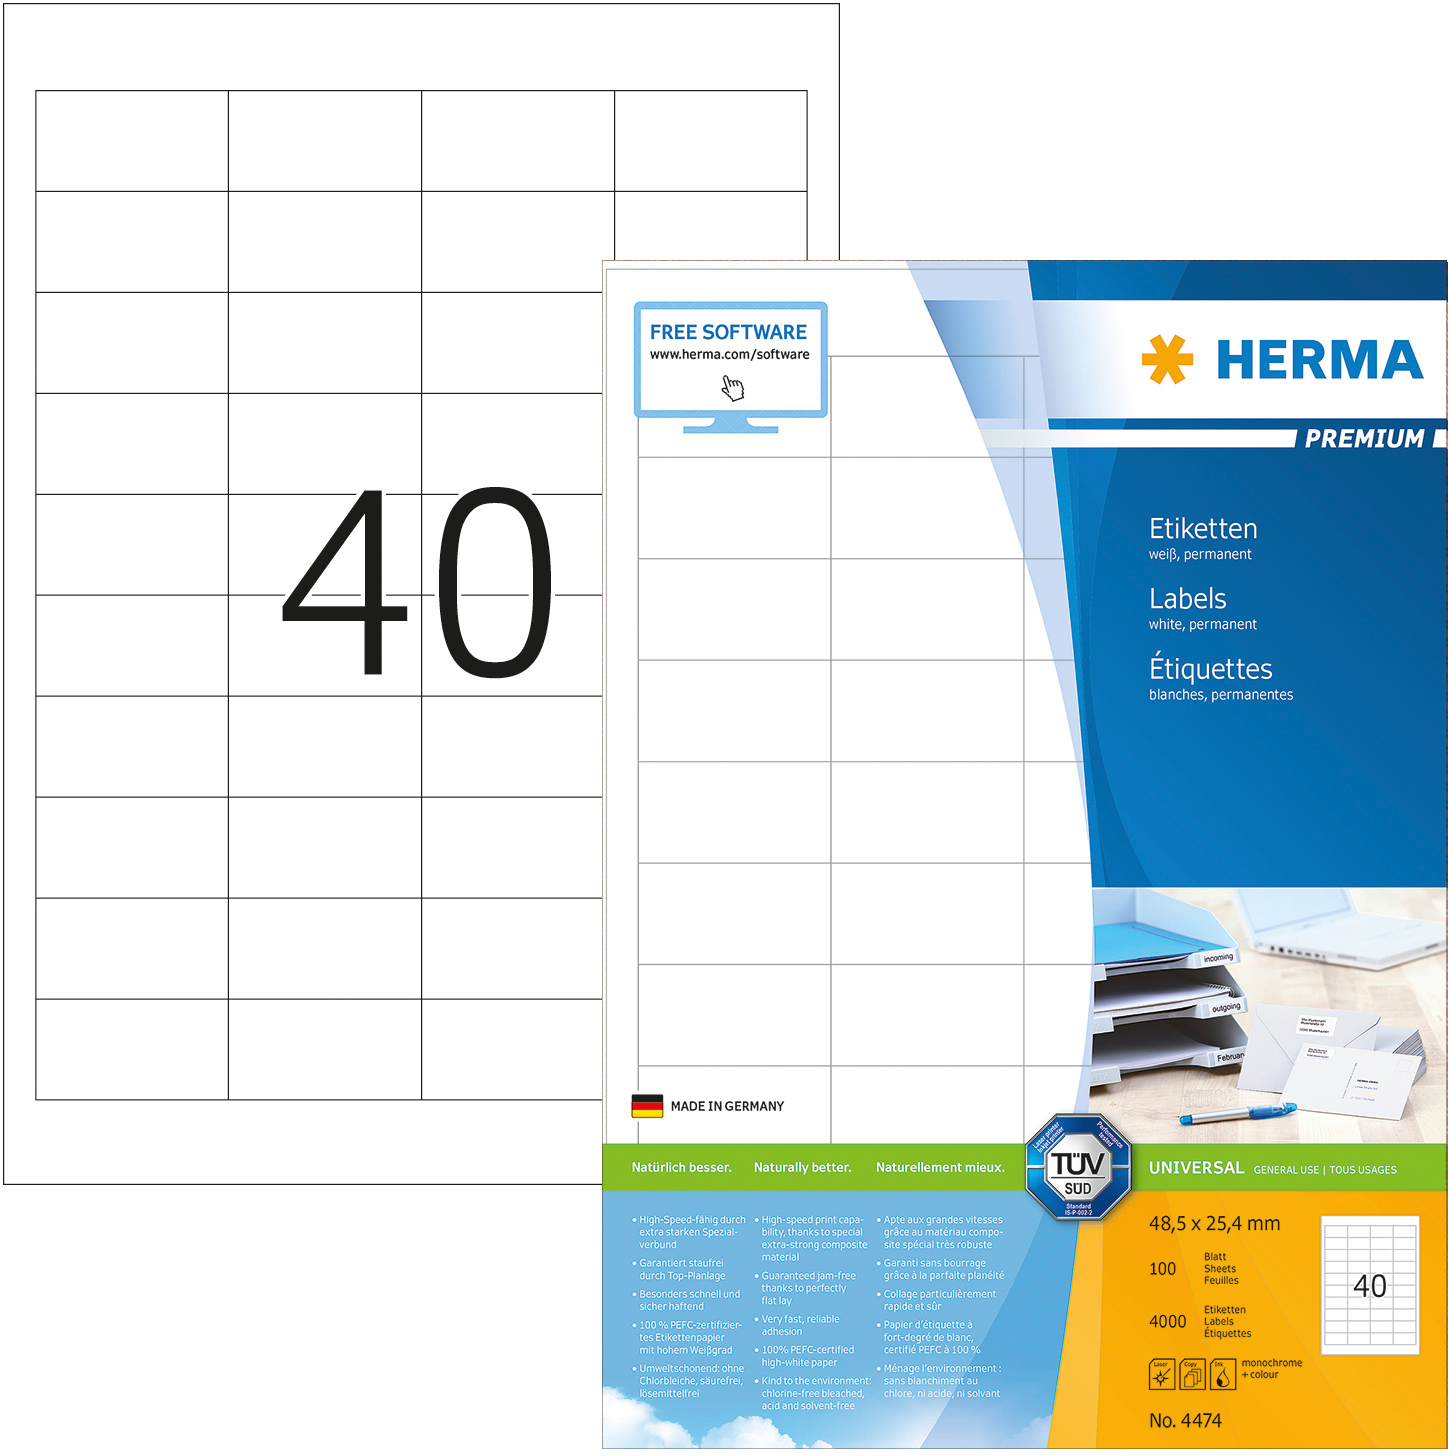 HERMA Etiquettes Premium 48,5×25,4mm 4474 blanc 4000 pcs.